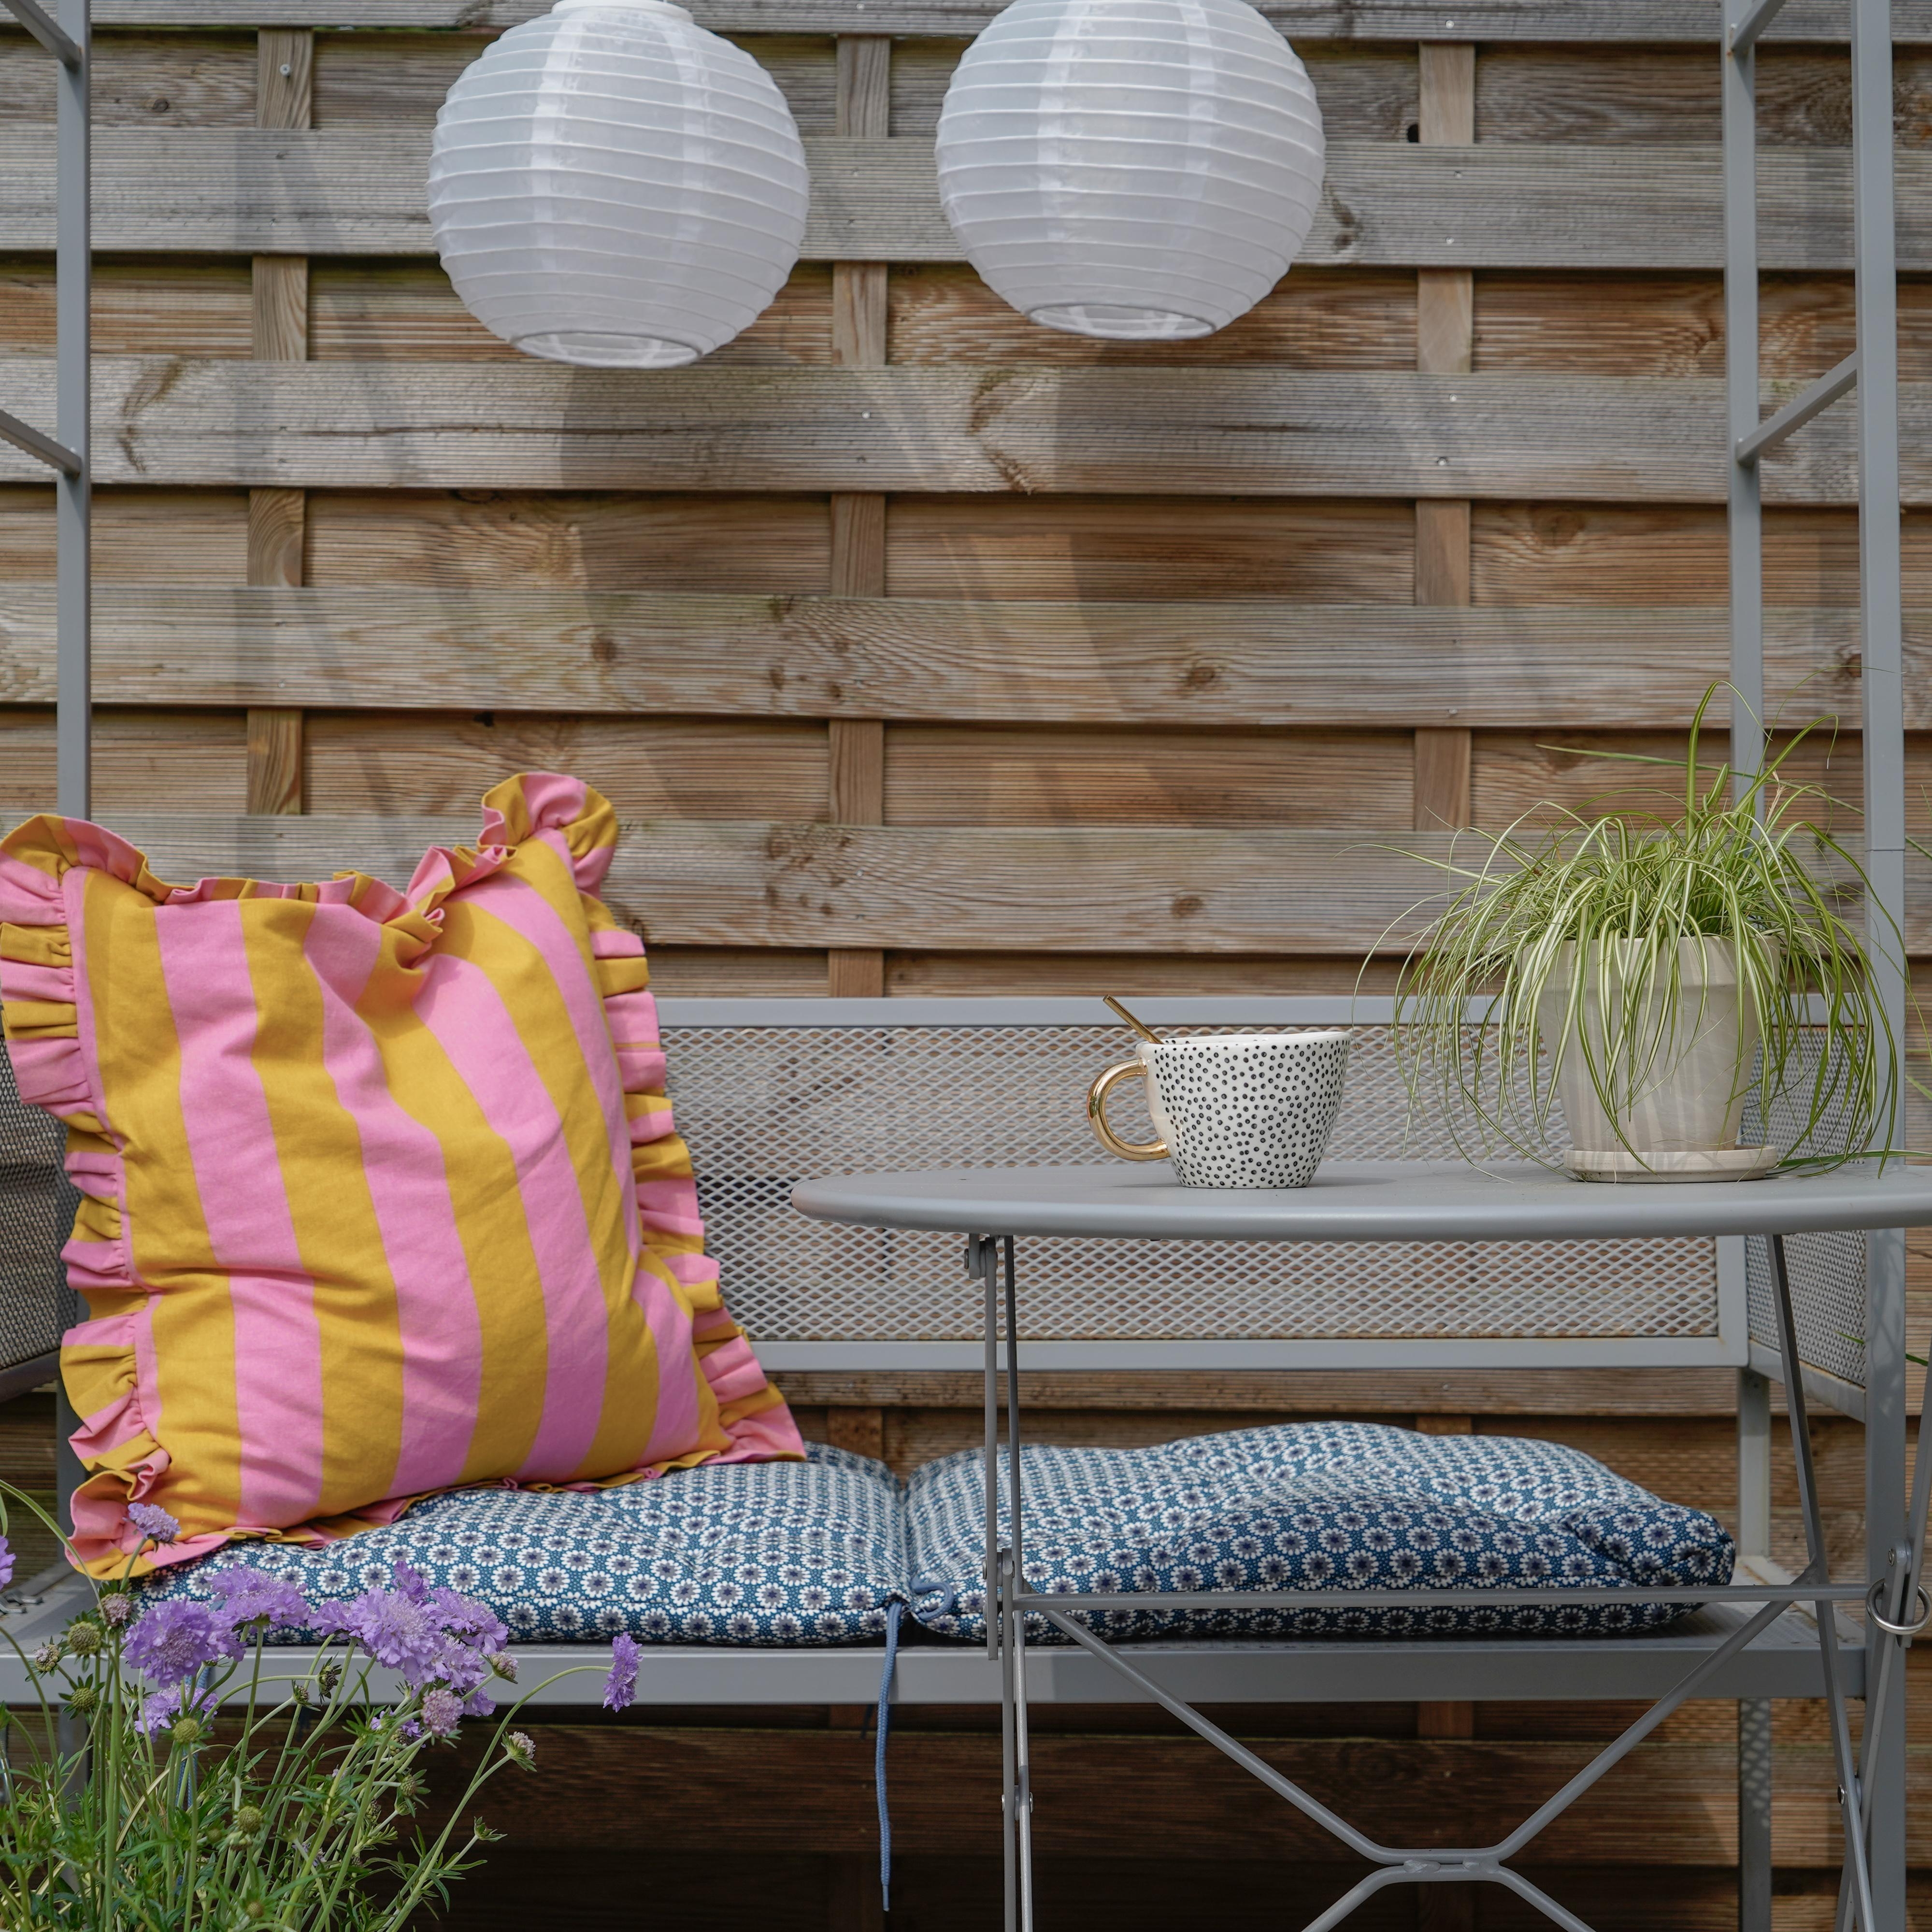 Unsere kleine Gartenoase 🌱#couchliebt #skandistyle
